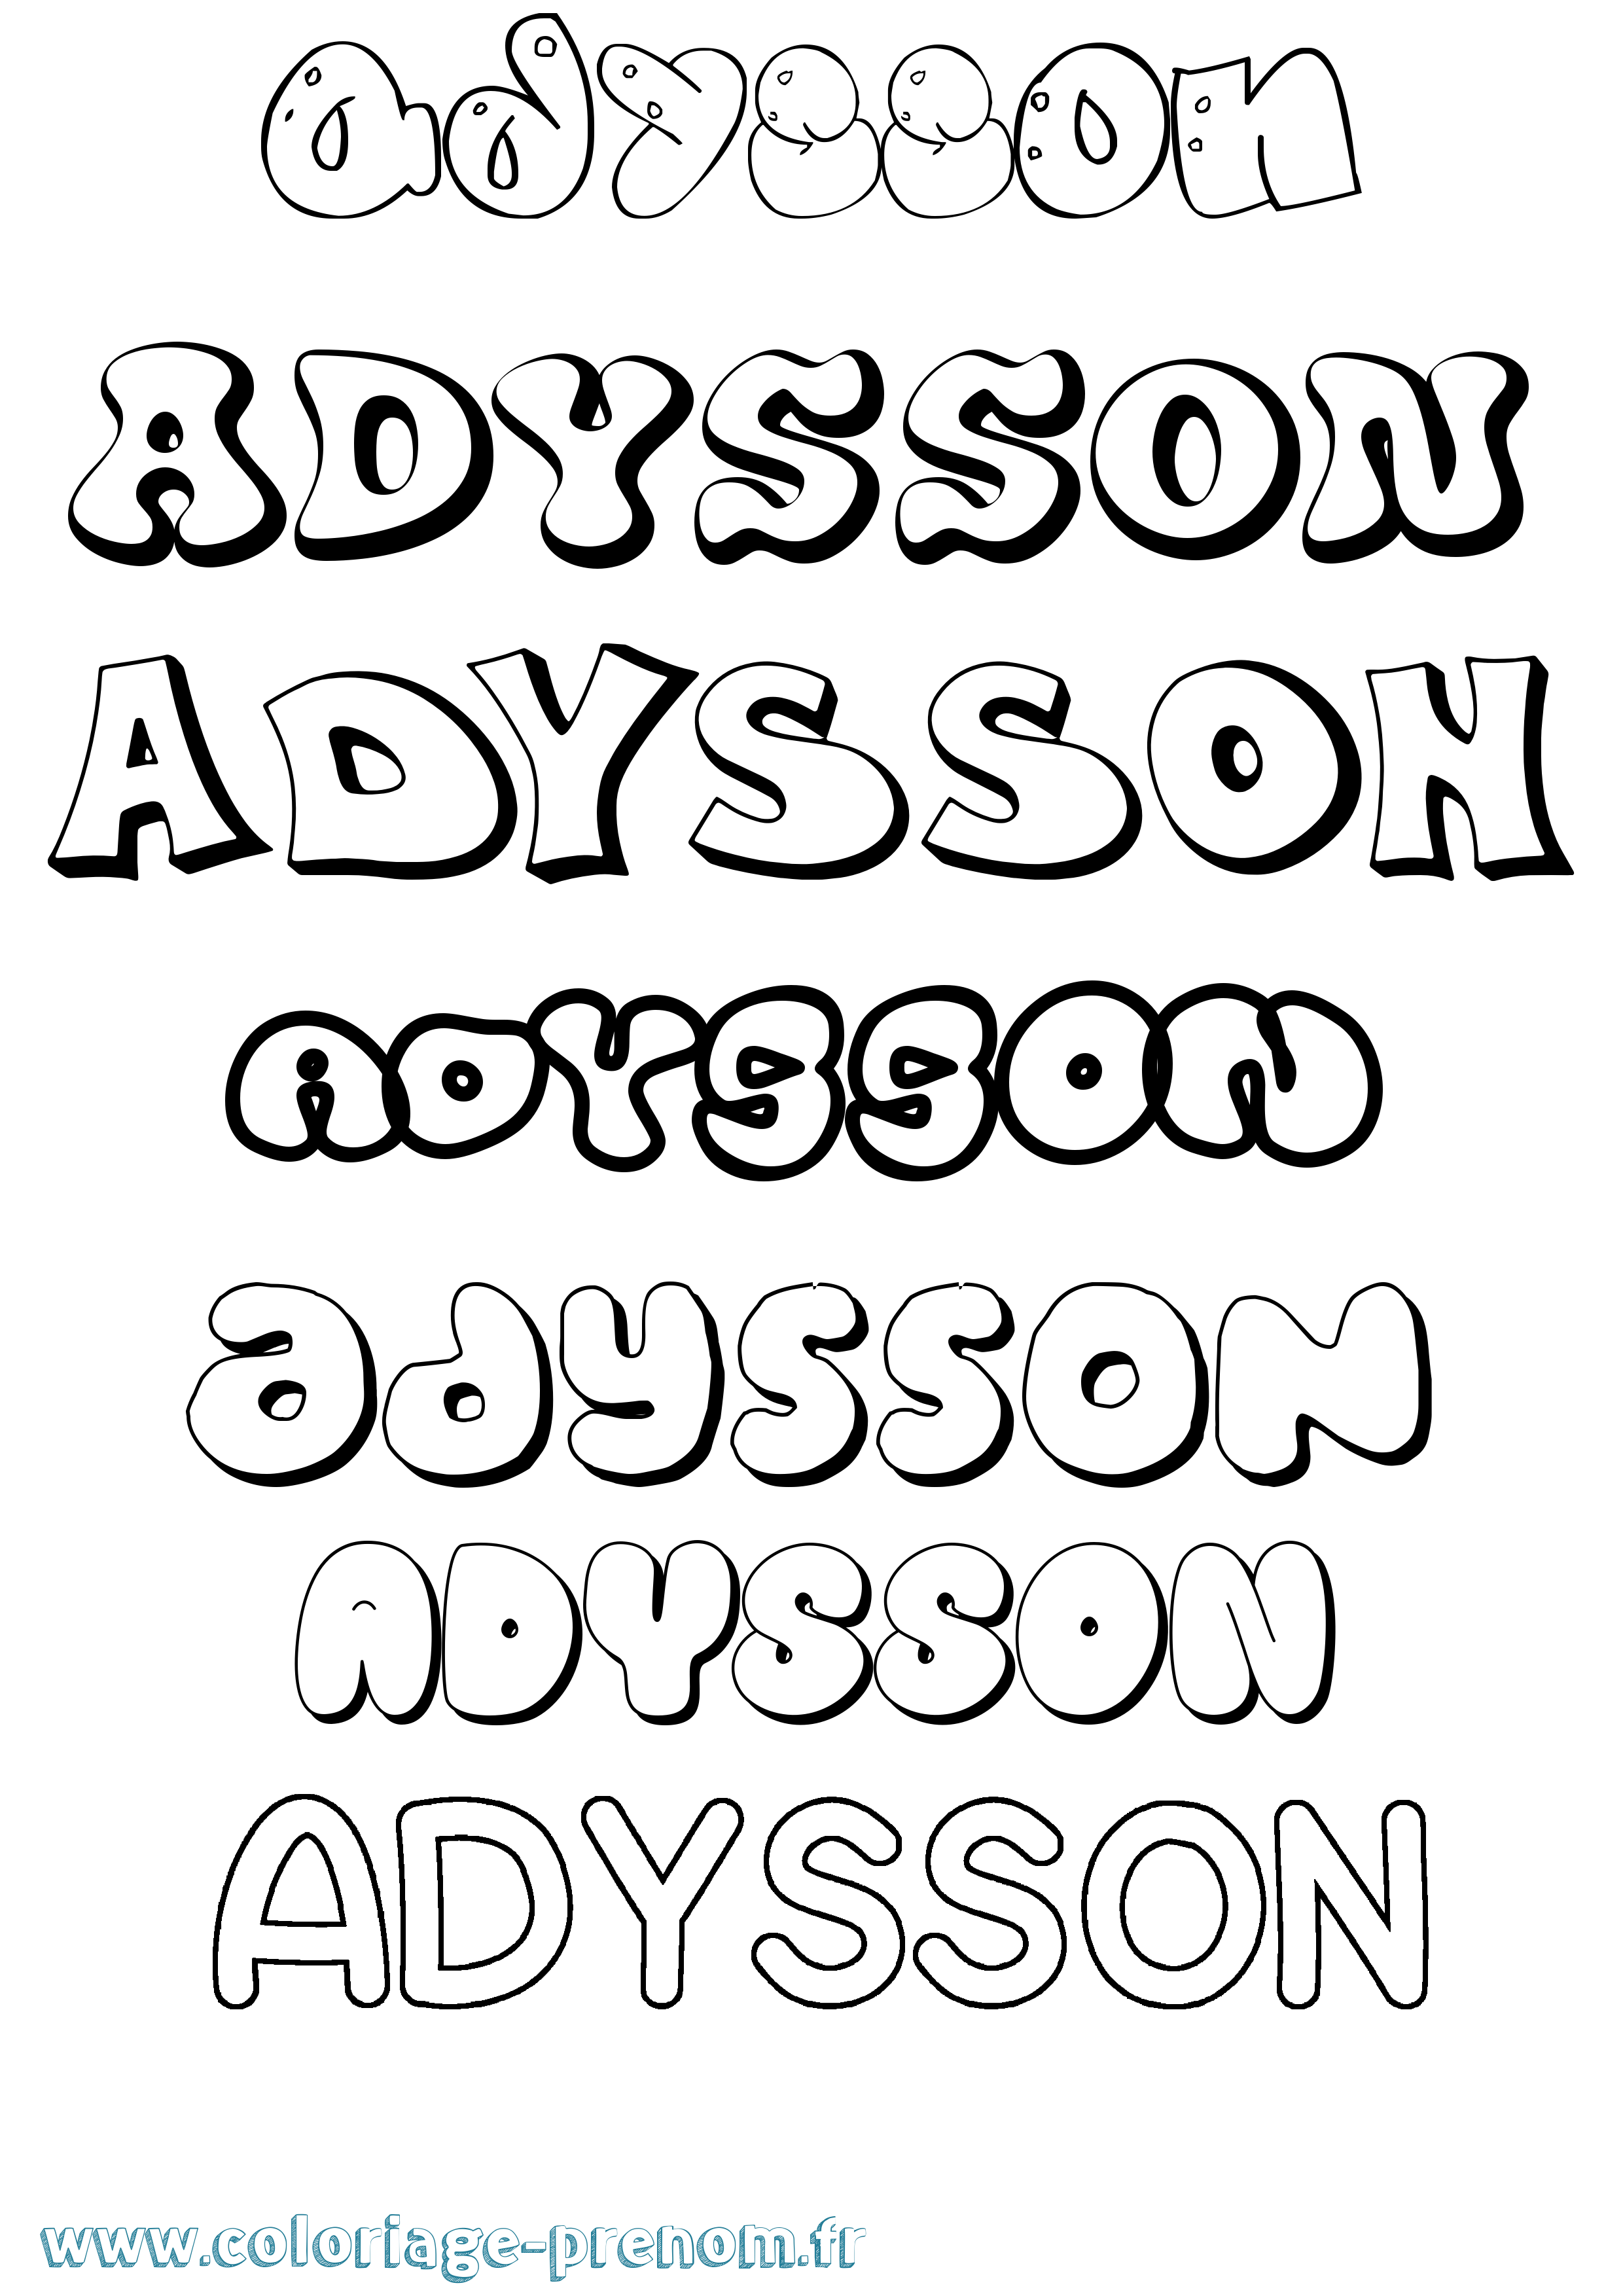 Coloriage prénom Adysson Bubble